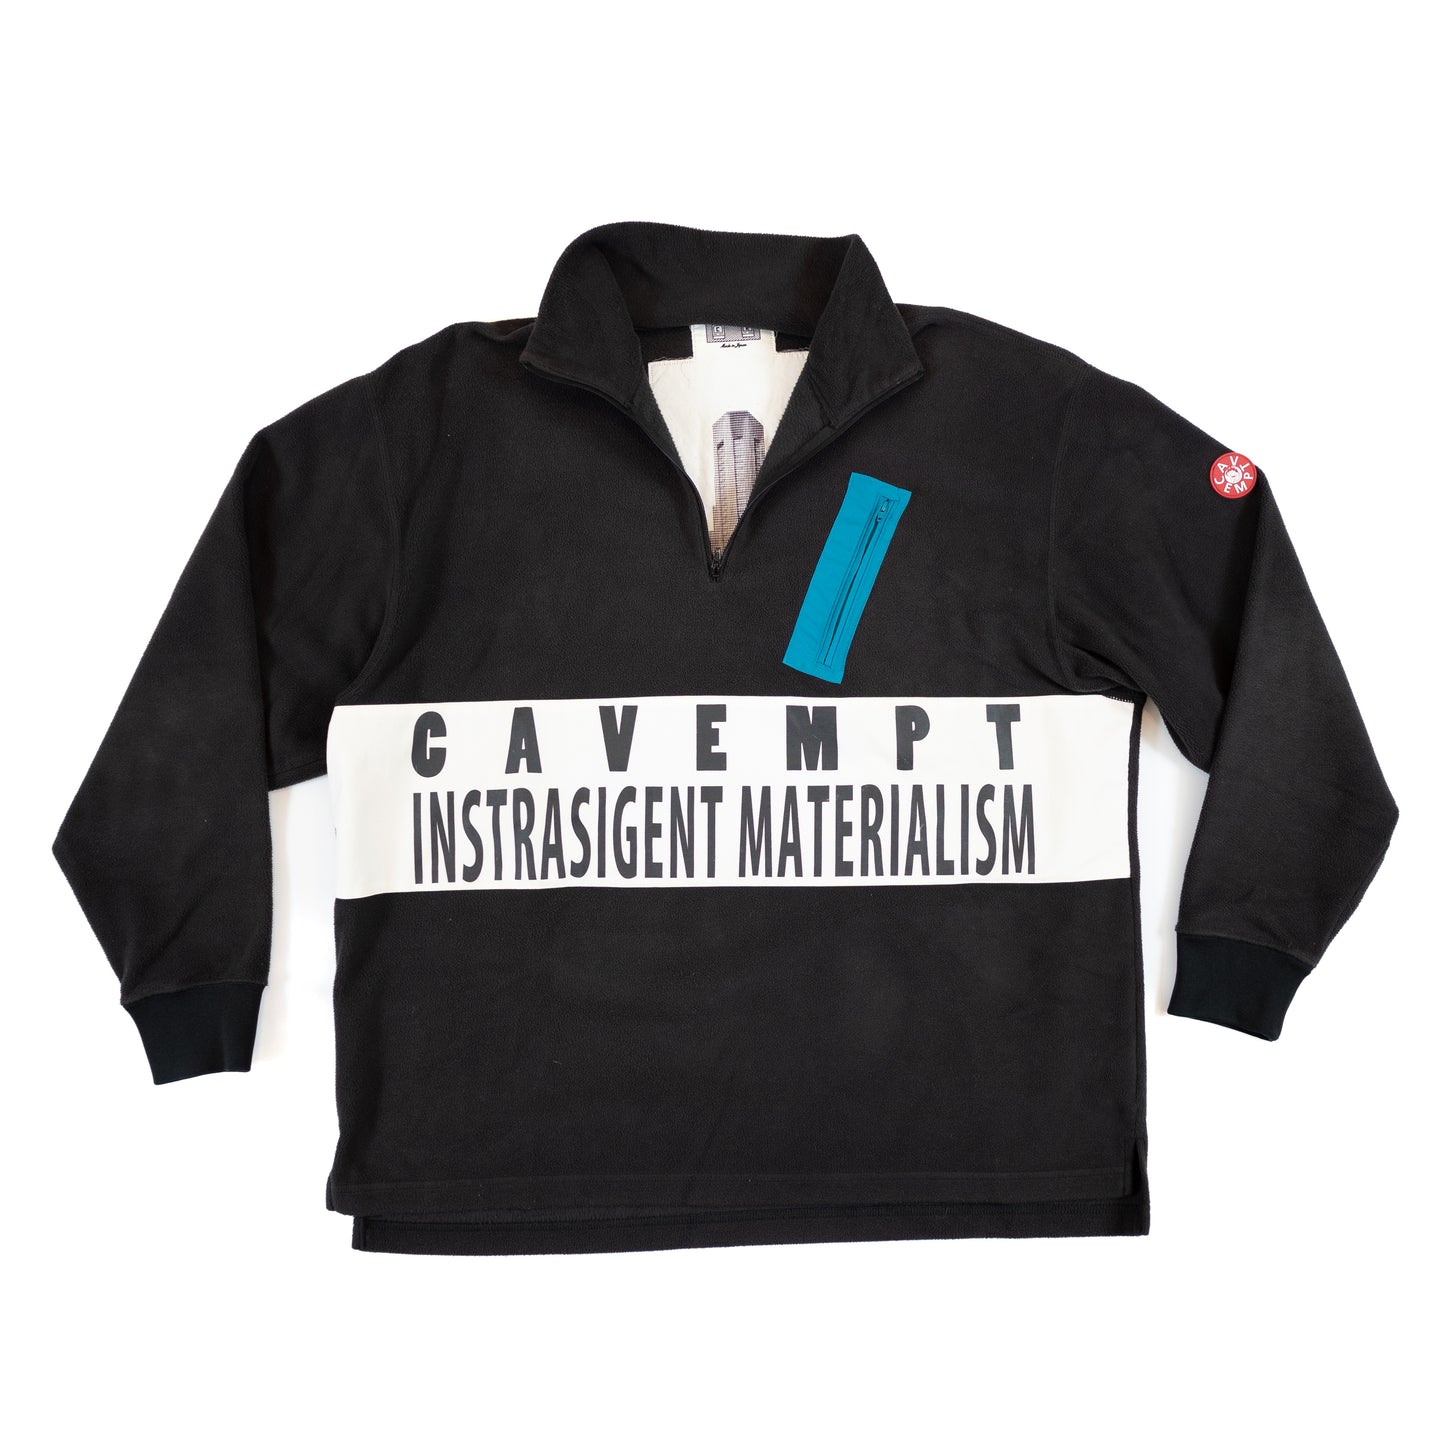 Cav Empt "Instrasigent Materialism" 3/4 Zip Fleece Pullover (2016FW)